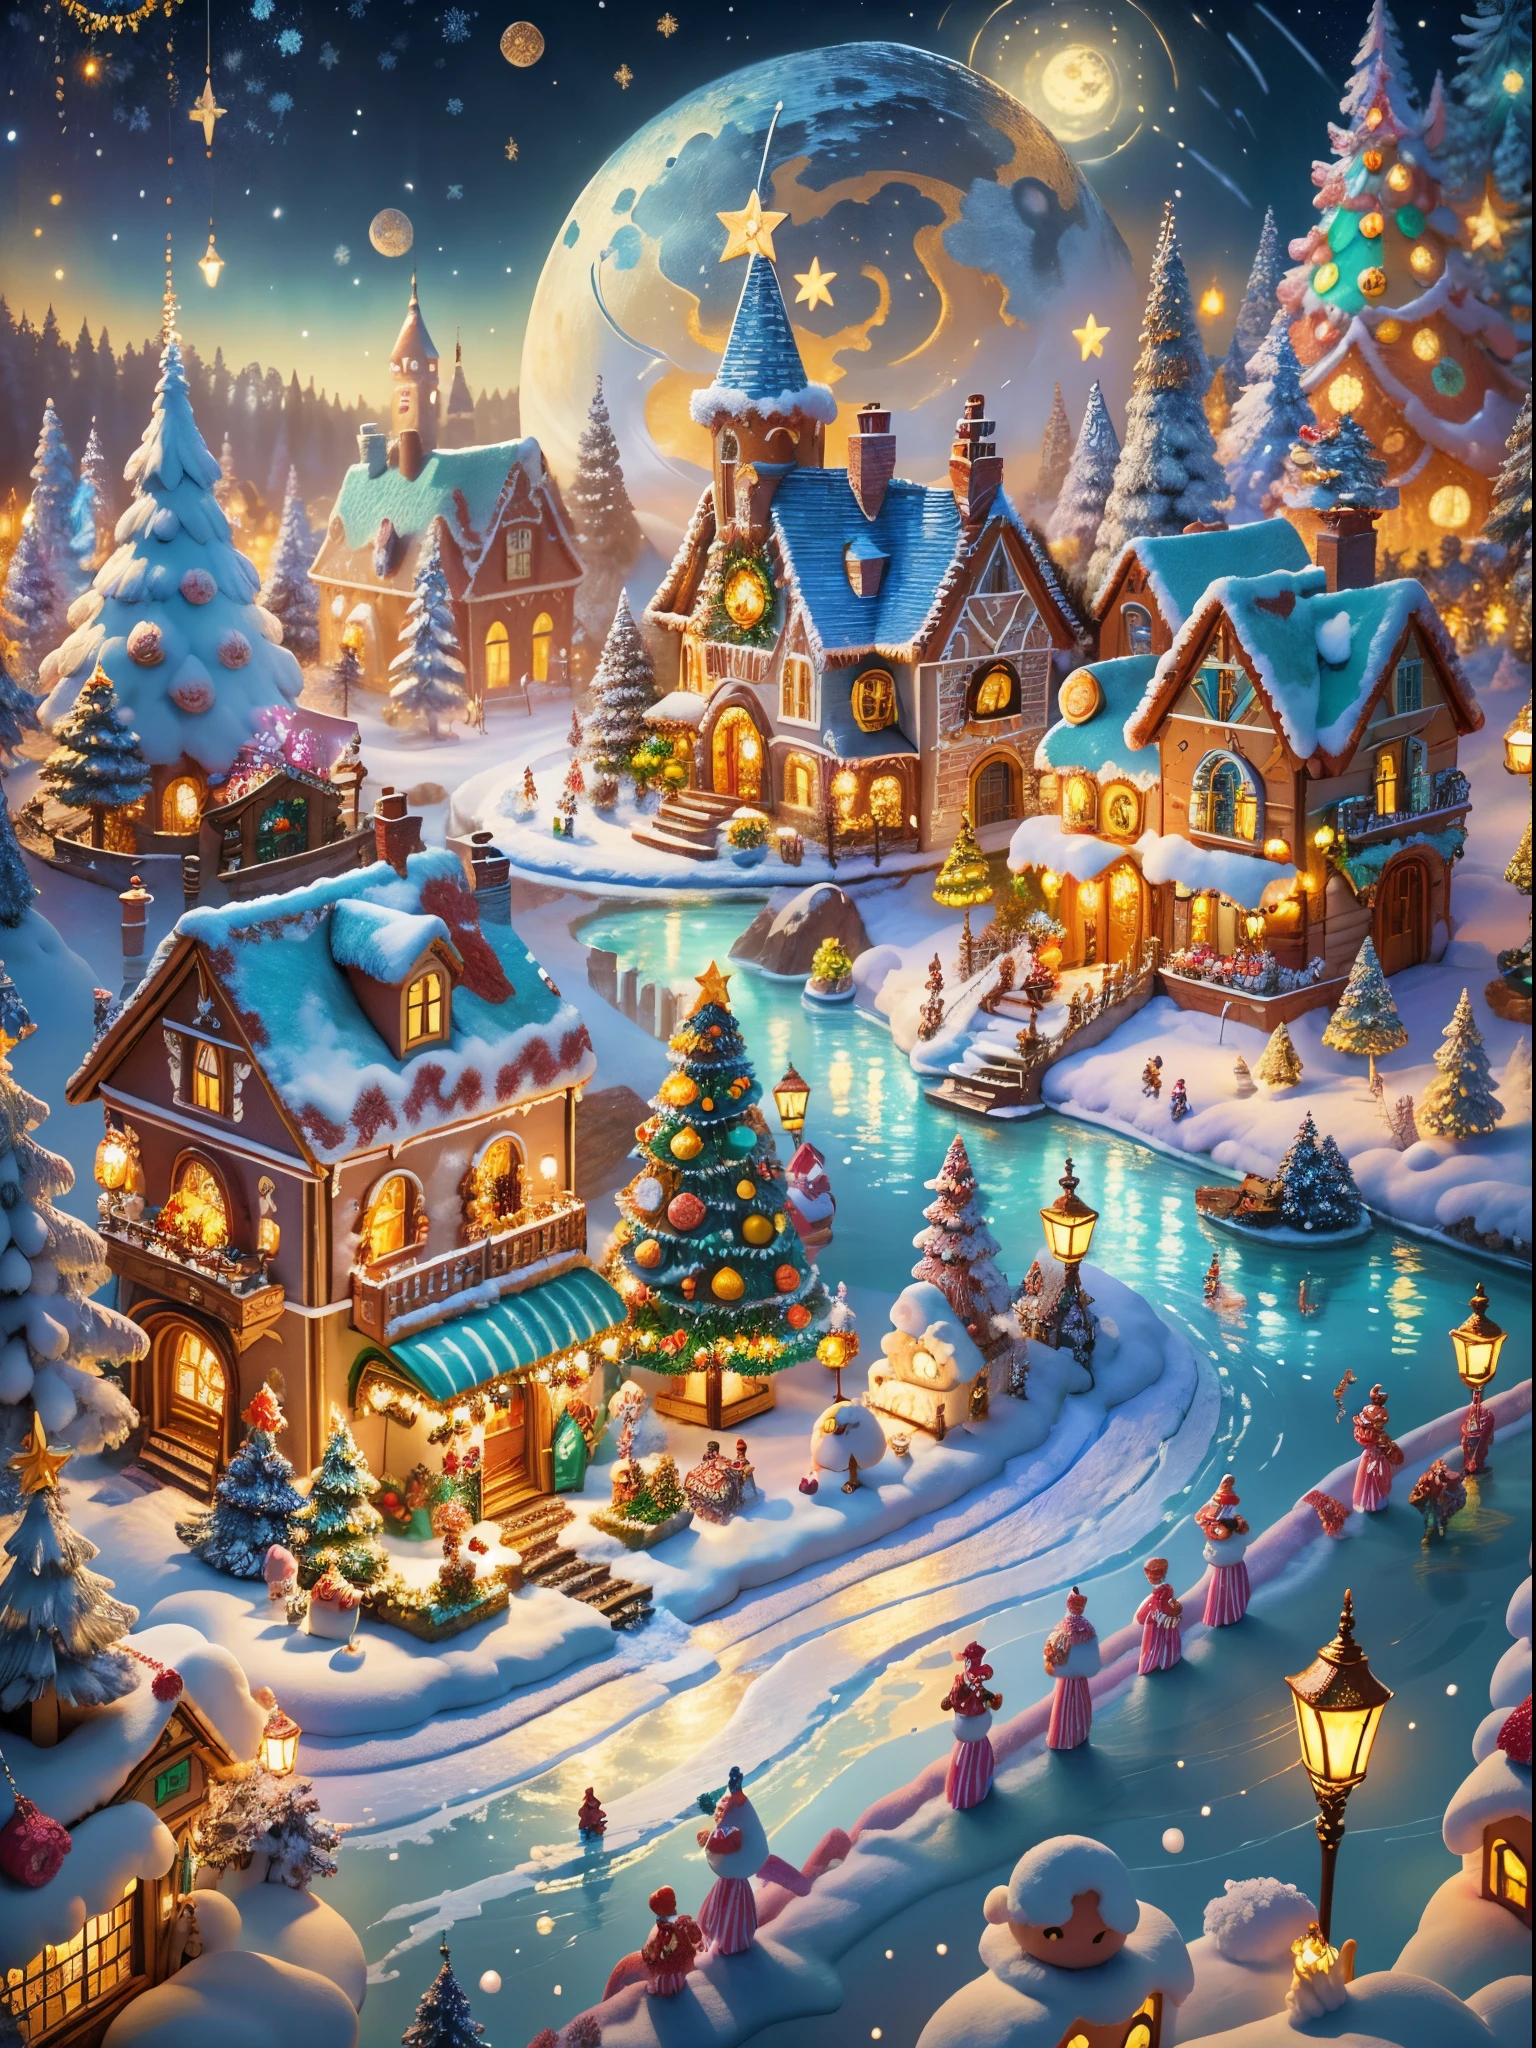 (obra maestra),（ultra-detallado：1.3），La mejor calidad en el mejor de los casos.，（espumoso:1.2），（Pueblo navideño en un cuento de hadas de ensueño.:1.4），(Arquitectura navideña estilo Van Gogh: 1.5),（la luna vacia），((Deliciosos dulces，árbol de Navidad, regalos, medias de Navidad, lindo hombre de jengibre，chapoteo de la casa de chocolate)), estilo de ilustración, y decoraciones, Pueblo navideño de fantasía, Precioso estilo de diseño, la noche，campo de nieve，luna llena，colores vibrantes、 ((fantasía caprichosa y encantadora)), Retrato surrealista, (Pueblo de cuento de hadas con temática de fantasía), (Accesorios de relojería caprichosos), (vistoso, Paisaje lleno de dulces), (Encantador, criaturas fantásticas), (un vibrante, edificio color caramelo), (Camino de dulces y caramelos), (castillo de caramelo) en distancia, (Como un espejo, Accesorios de reloj obra maestra asimétrica.), (rico, FantasticColors), (estrellas titilantes) Elevado, (sueño de cuatro dimensiones), (Ambiente encantador y encantador.), (composición juguetona), (Efectos de iluminación vívidos), 1.4x realism，hiper alta definición，Se muestra en esta hermosa escena.，（muy meticuloso，diseño razonable，Líneas claras，Alta nitidez，obra maestra，arte oficial，efecto de luz de película，8k)